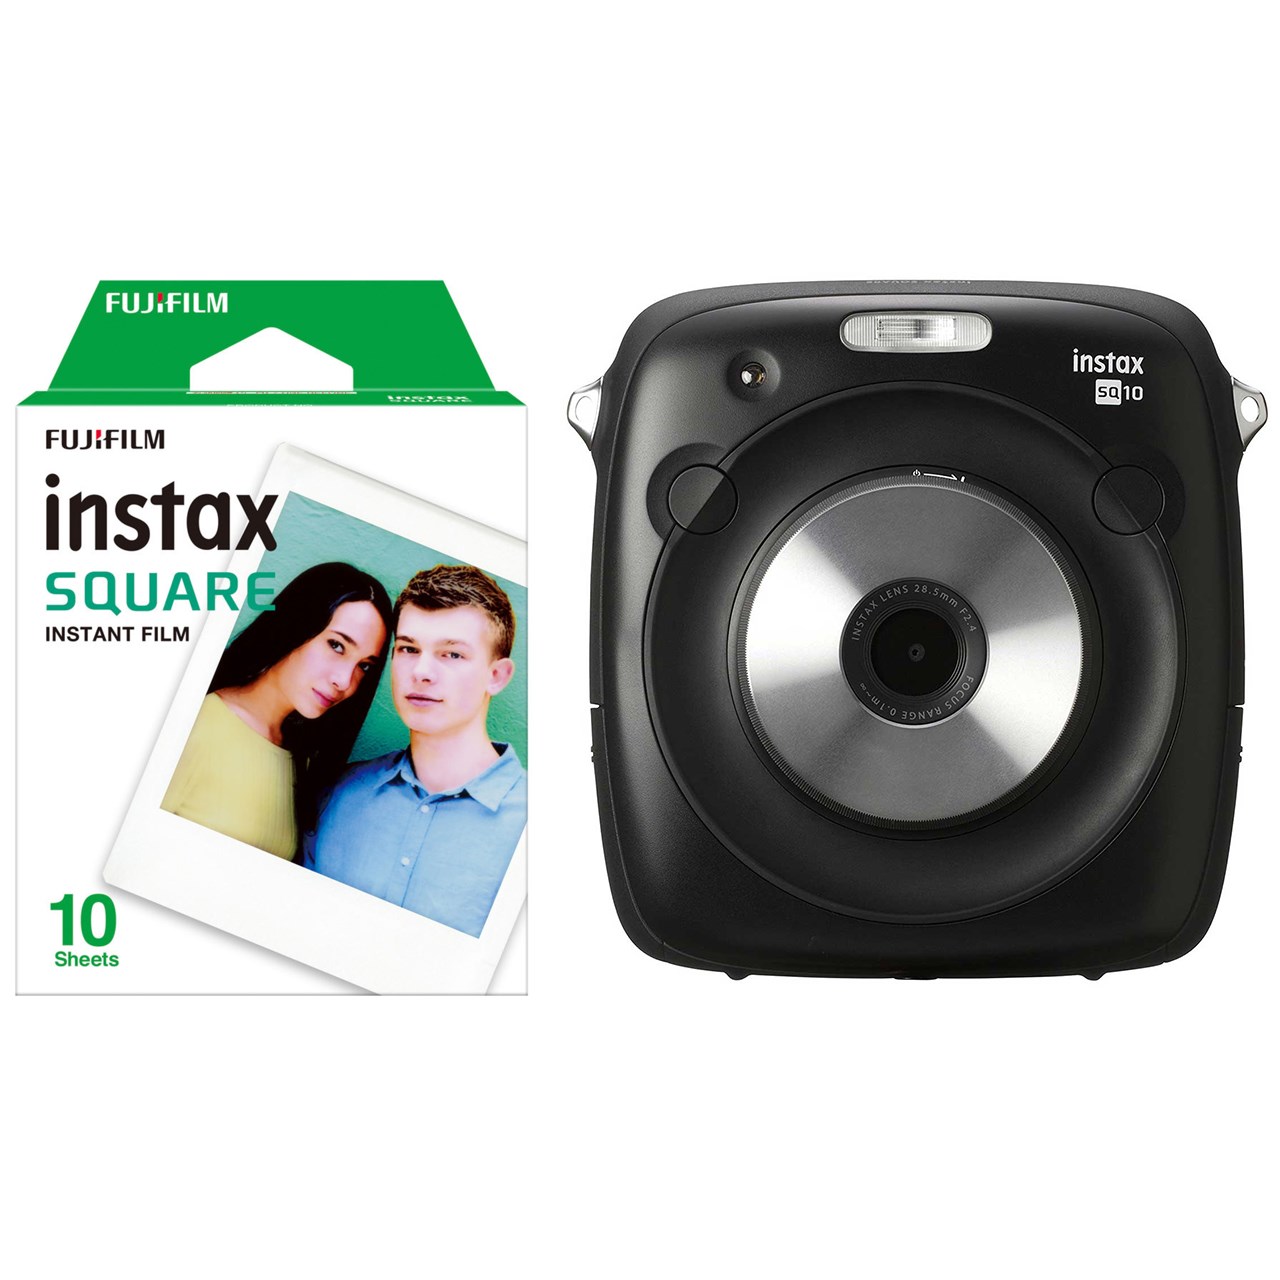 دوربین عکاسی چاپ سریع فوجی فیلم مدل Instax Square SQ10 به همراه فیلم مخصوص